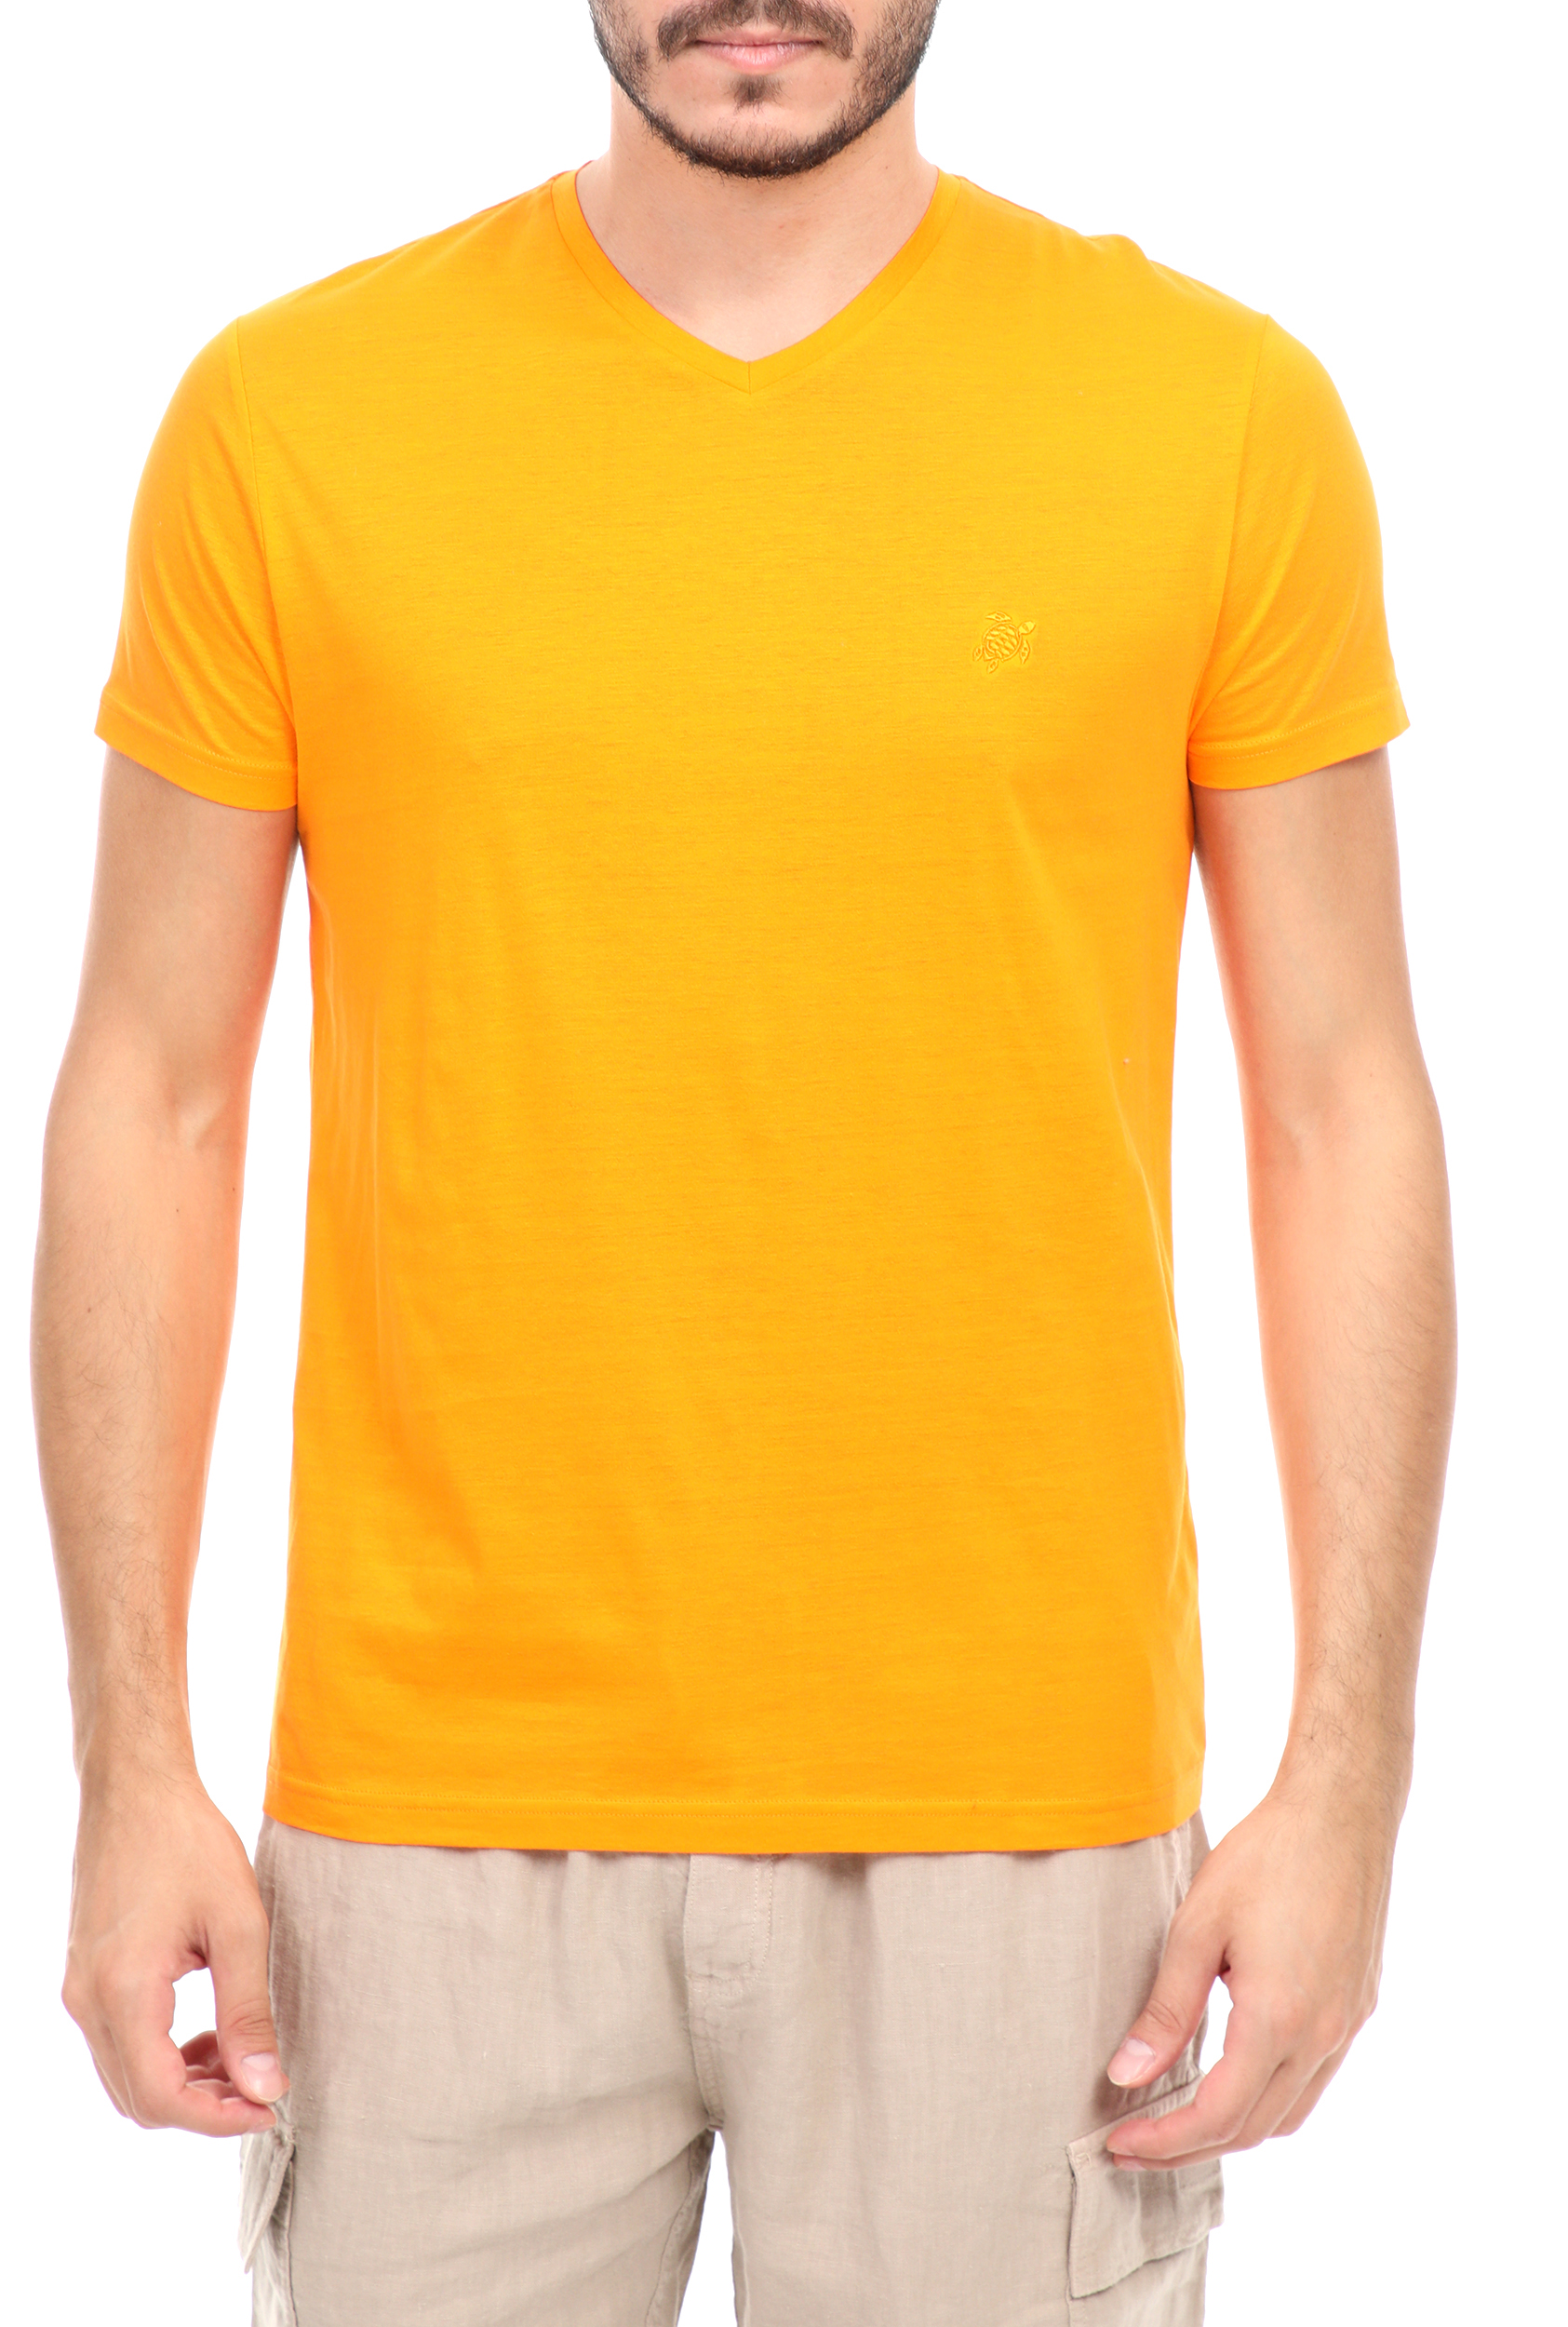 Ανδρικά/Ρούχα/Μπλούζες/Κοντομάνικες VILEBREQUIN - Ανδρική μπλούζα VILEBREQUIN κίτρινη